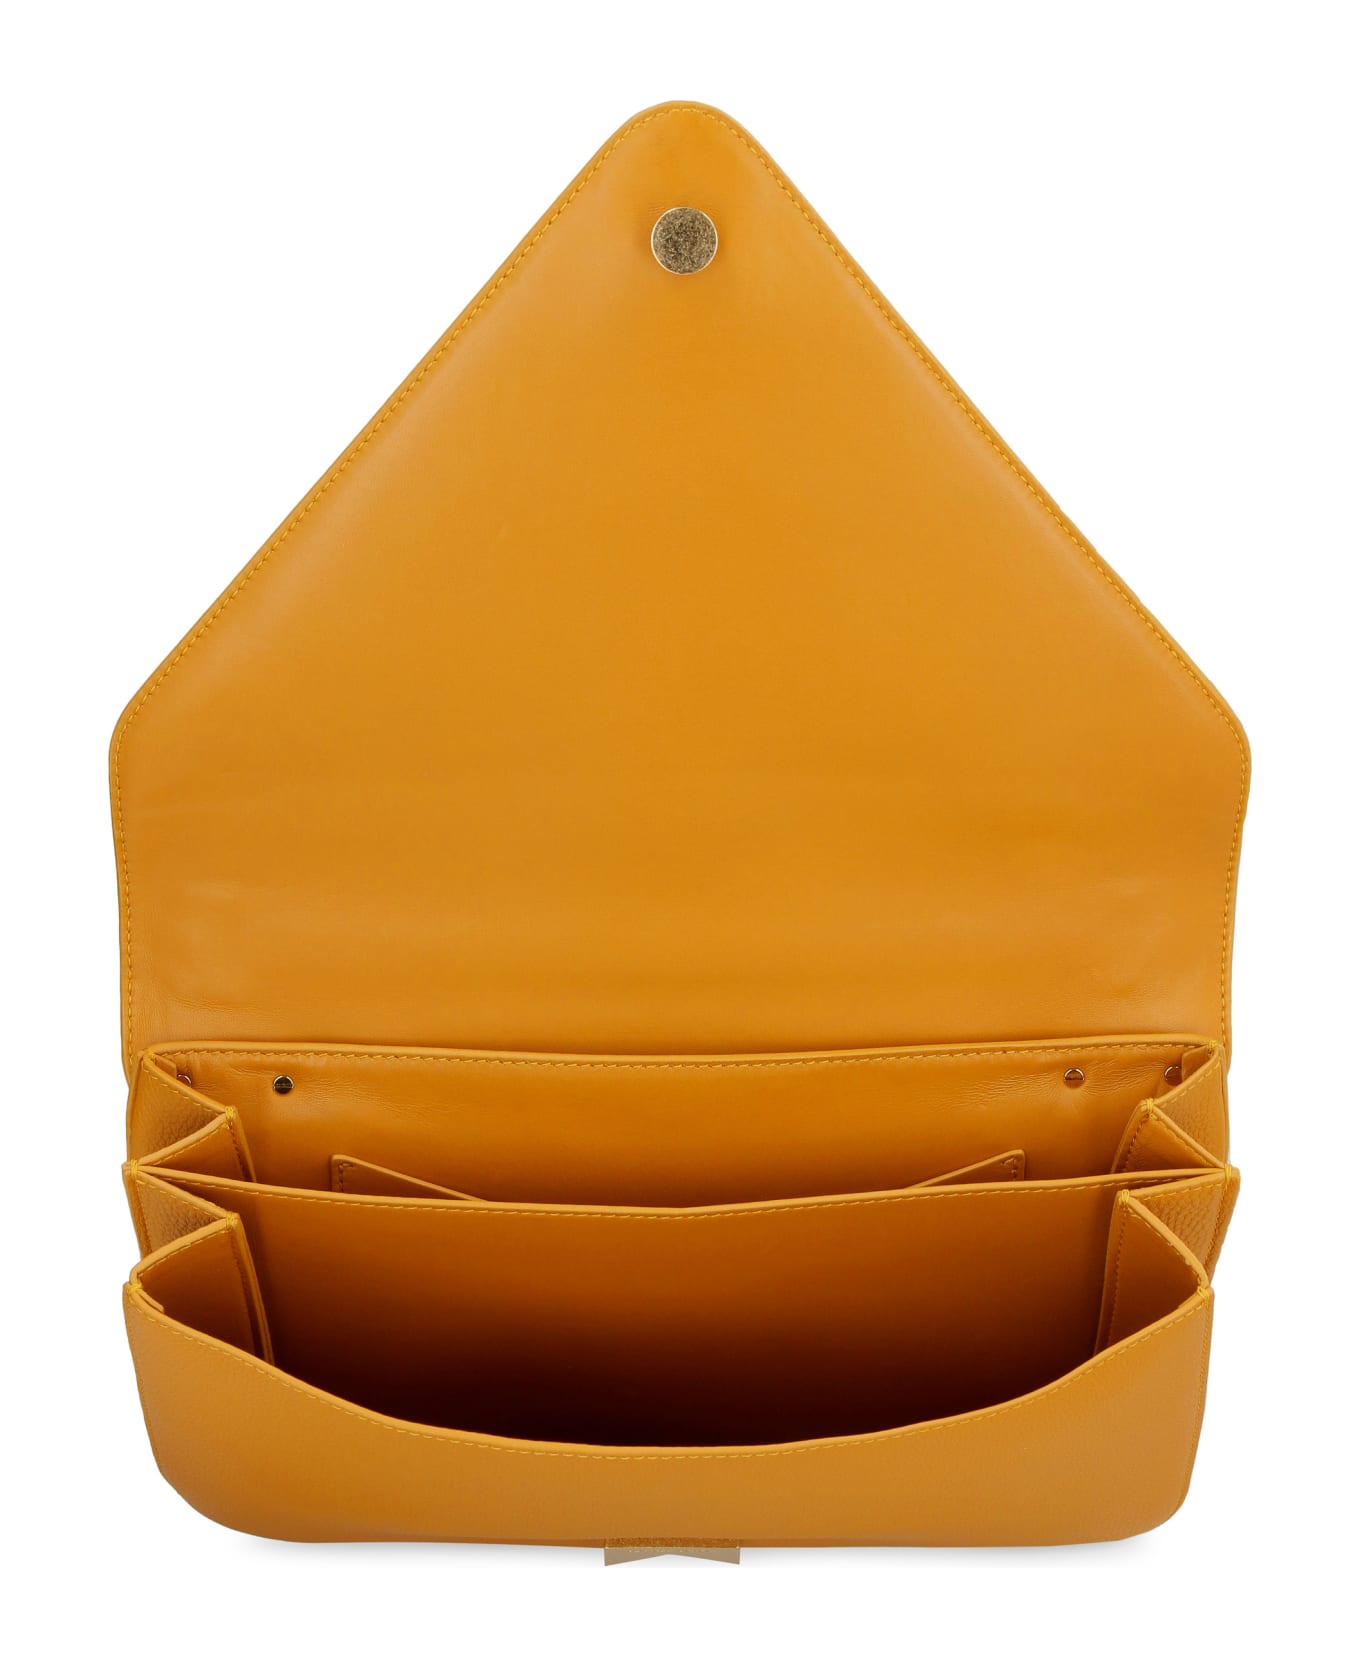 Bottega Veneta Mount Leather Envelope Bag - Ocher